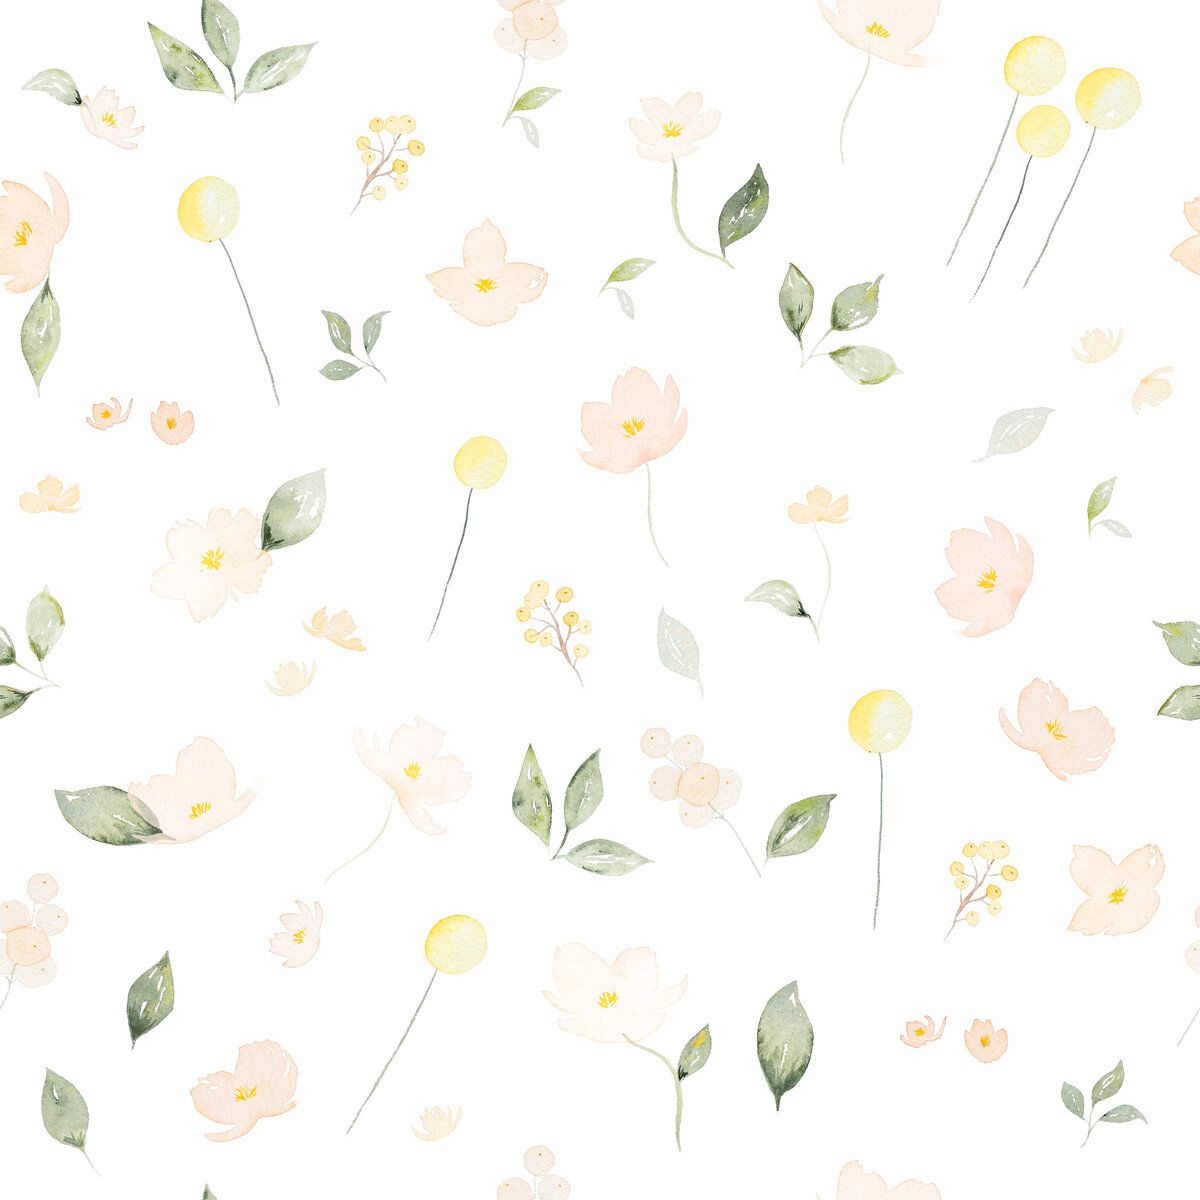 watercolor-peachy-floral-repeat-block-whitebg